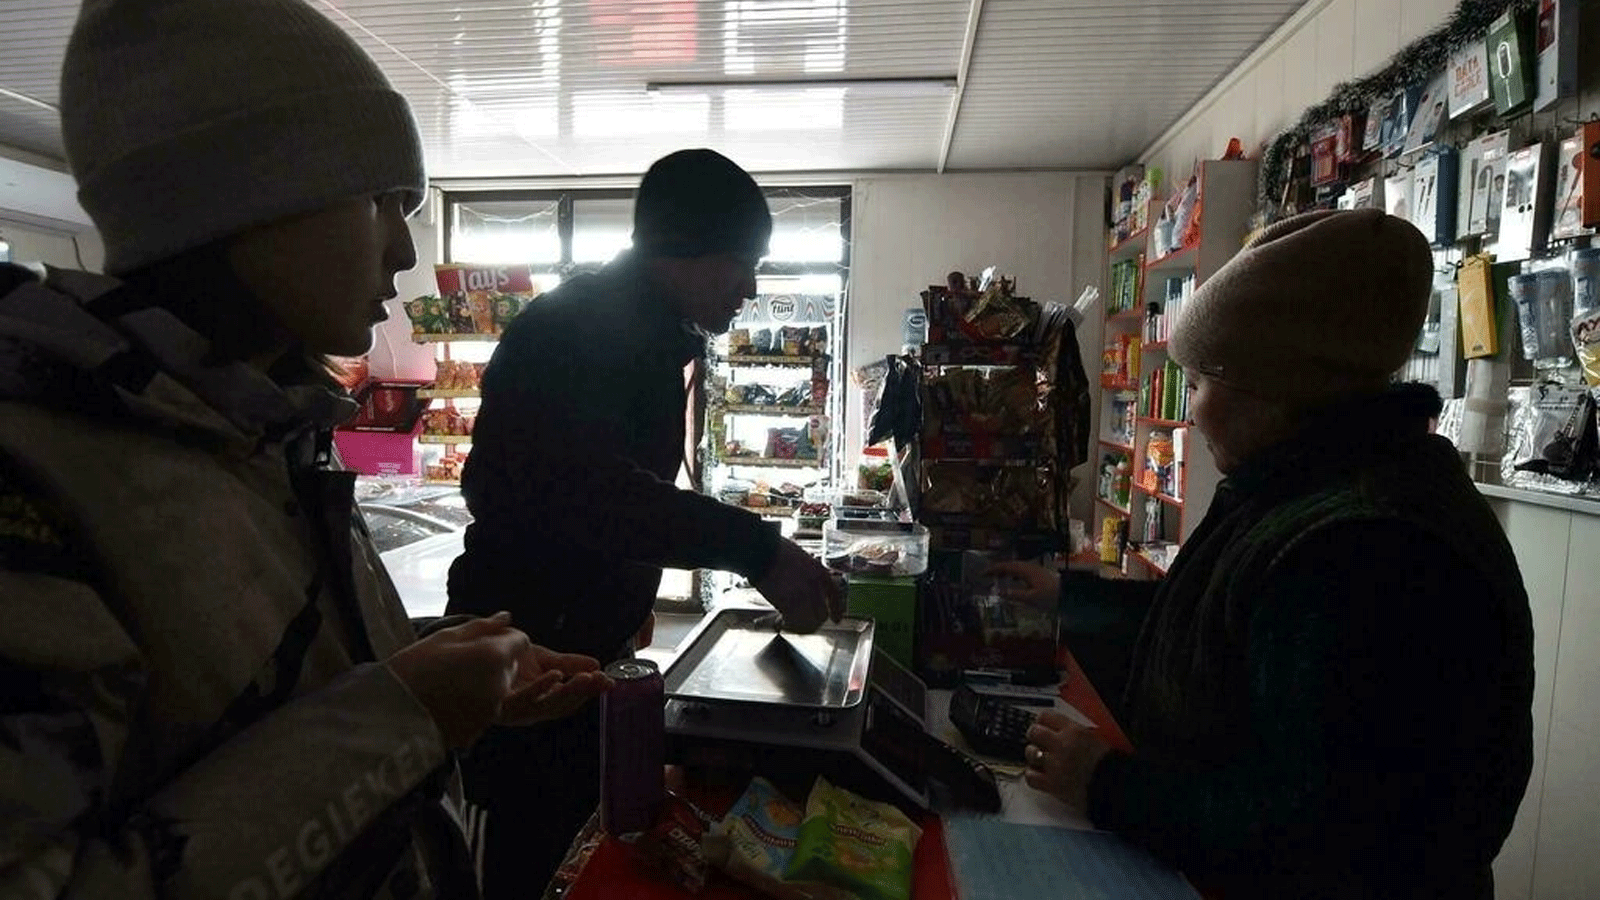 صورة لزبائن يشترون من المتجر وسط انقطاع التيار الكهربائي